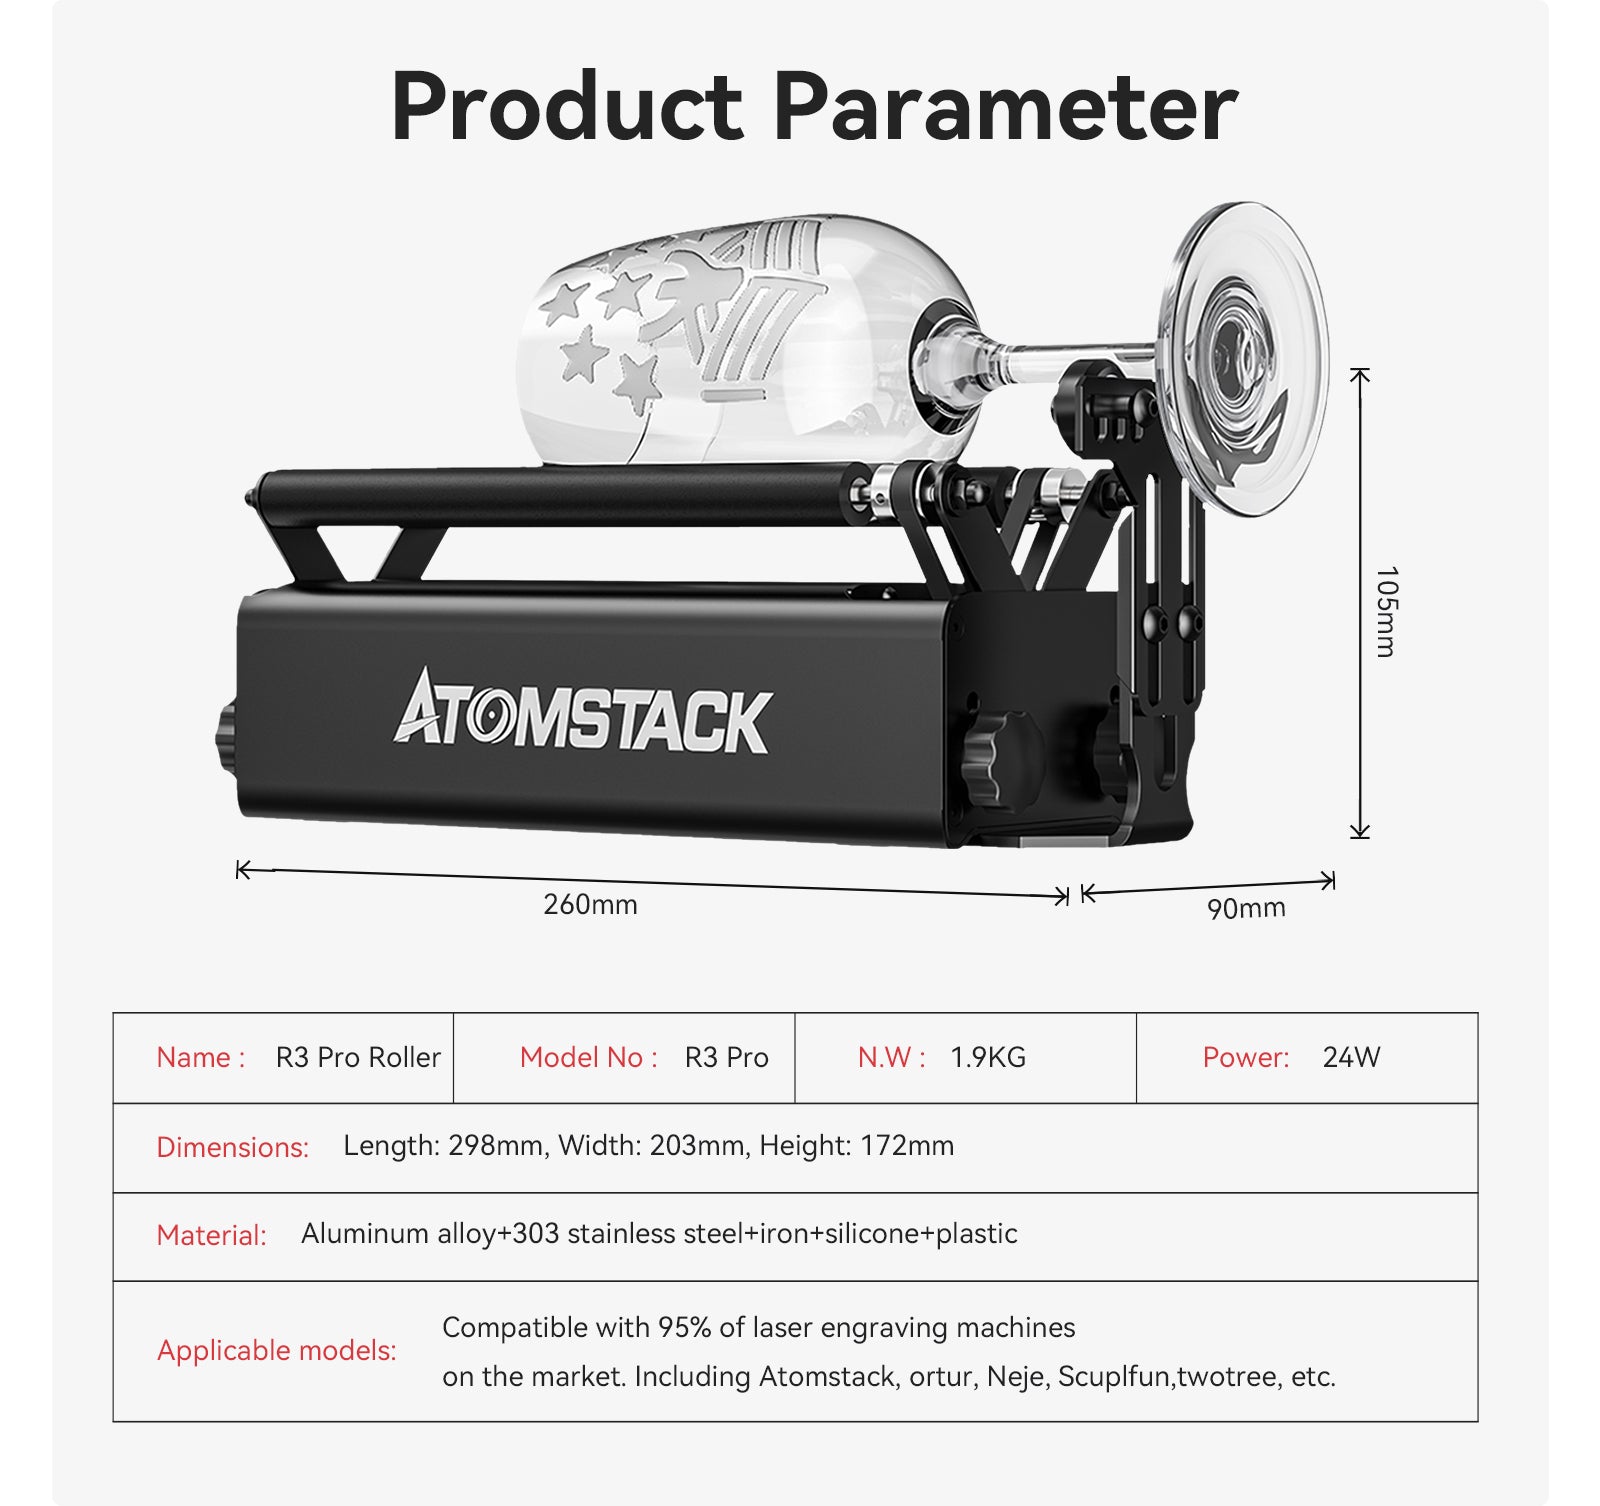 buy atomstack 3r pro roller diameter